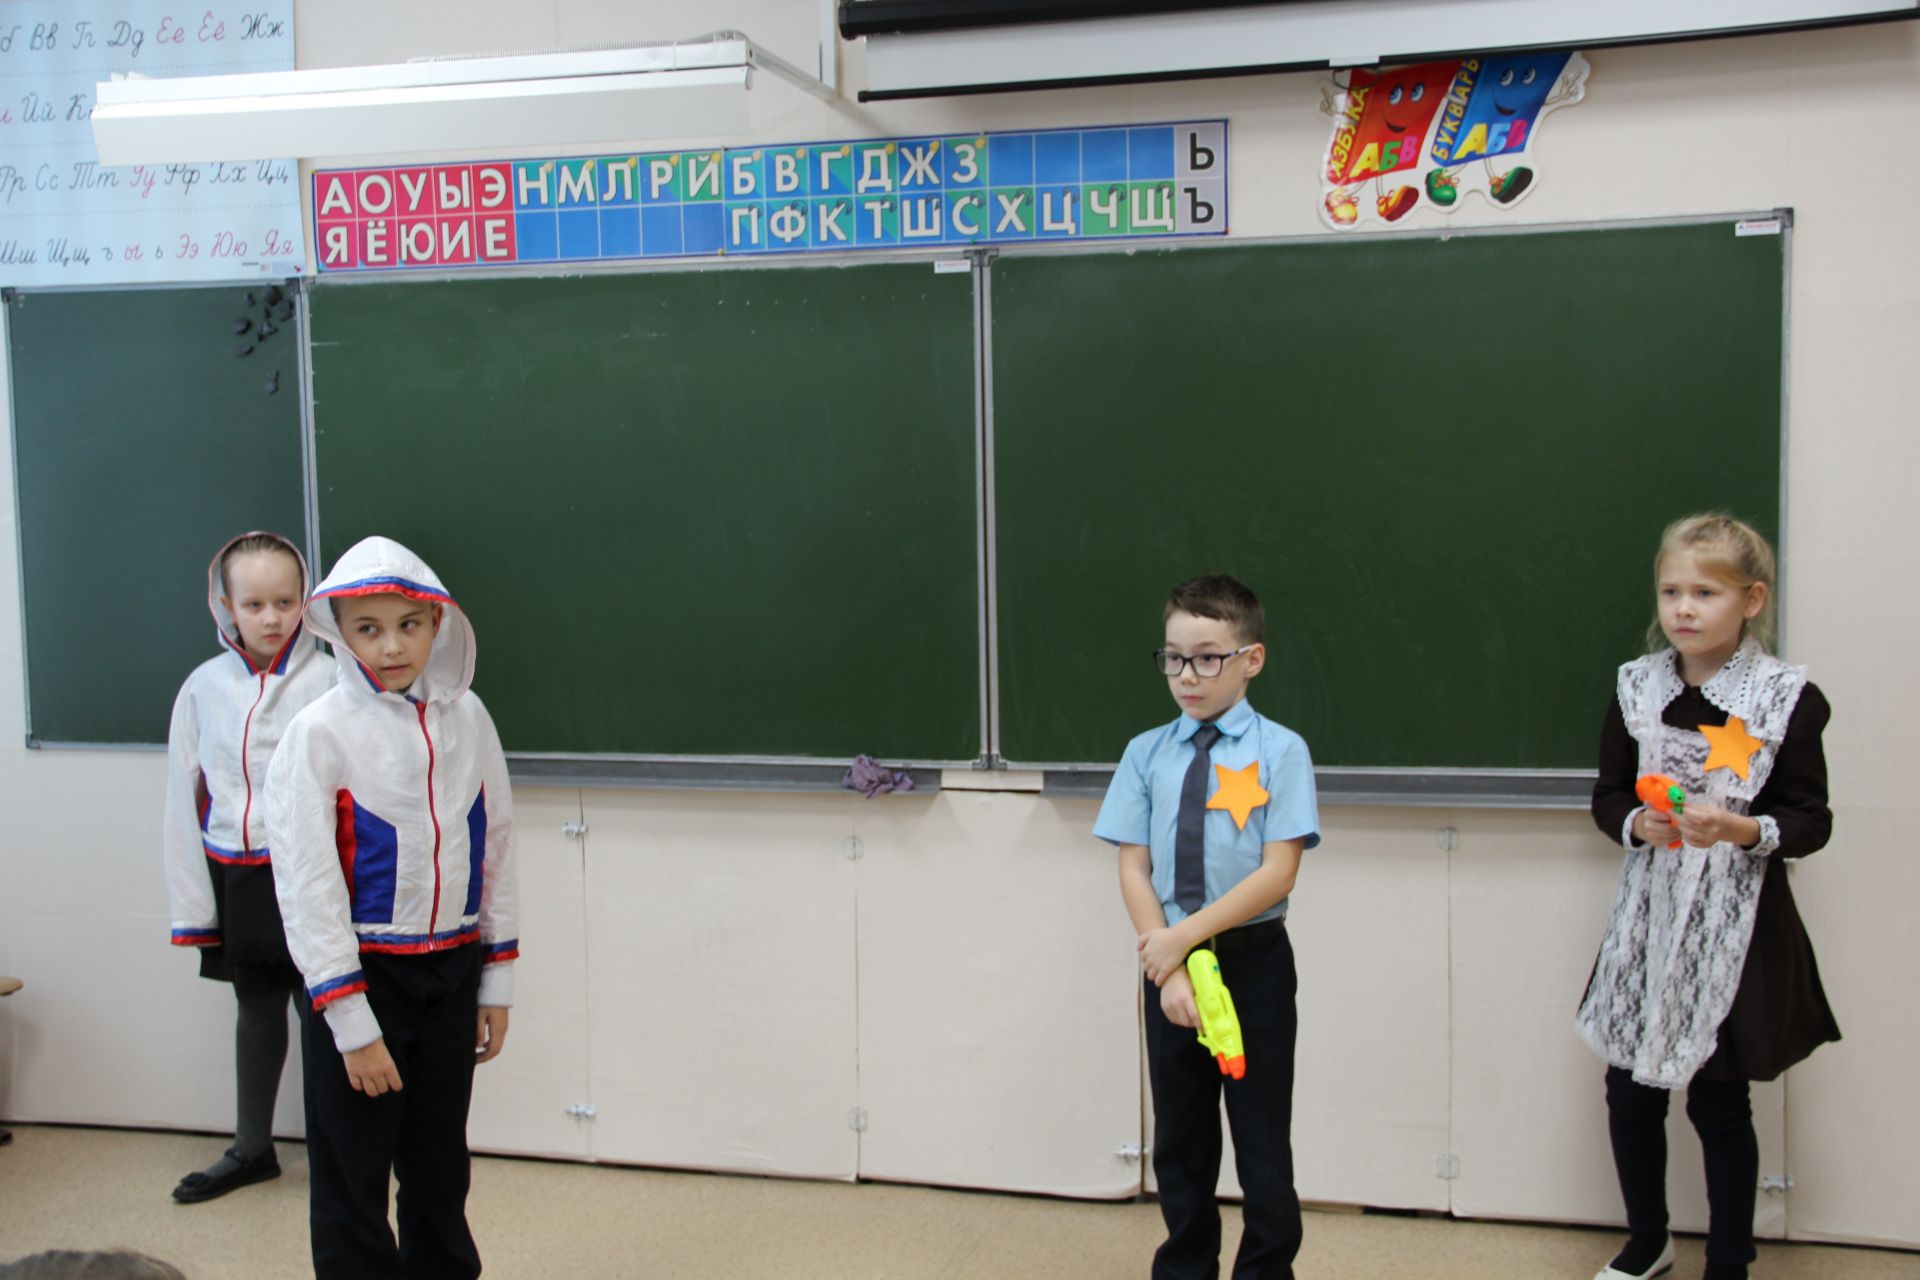 Дети из заинской школы делают телесюжеты, ставят спектакли, учатся разговорному английскому языку